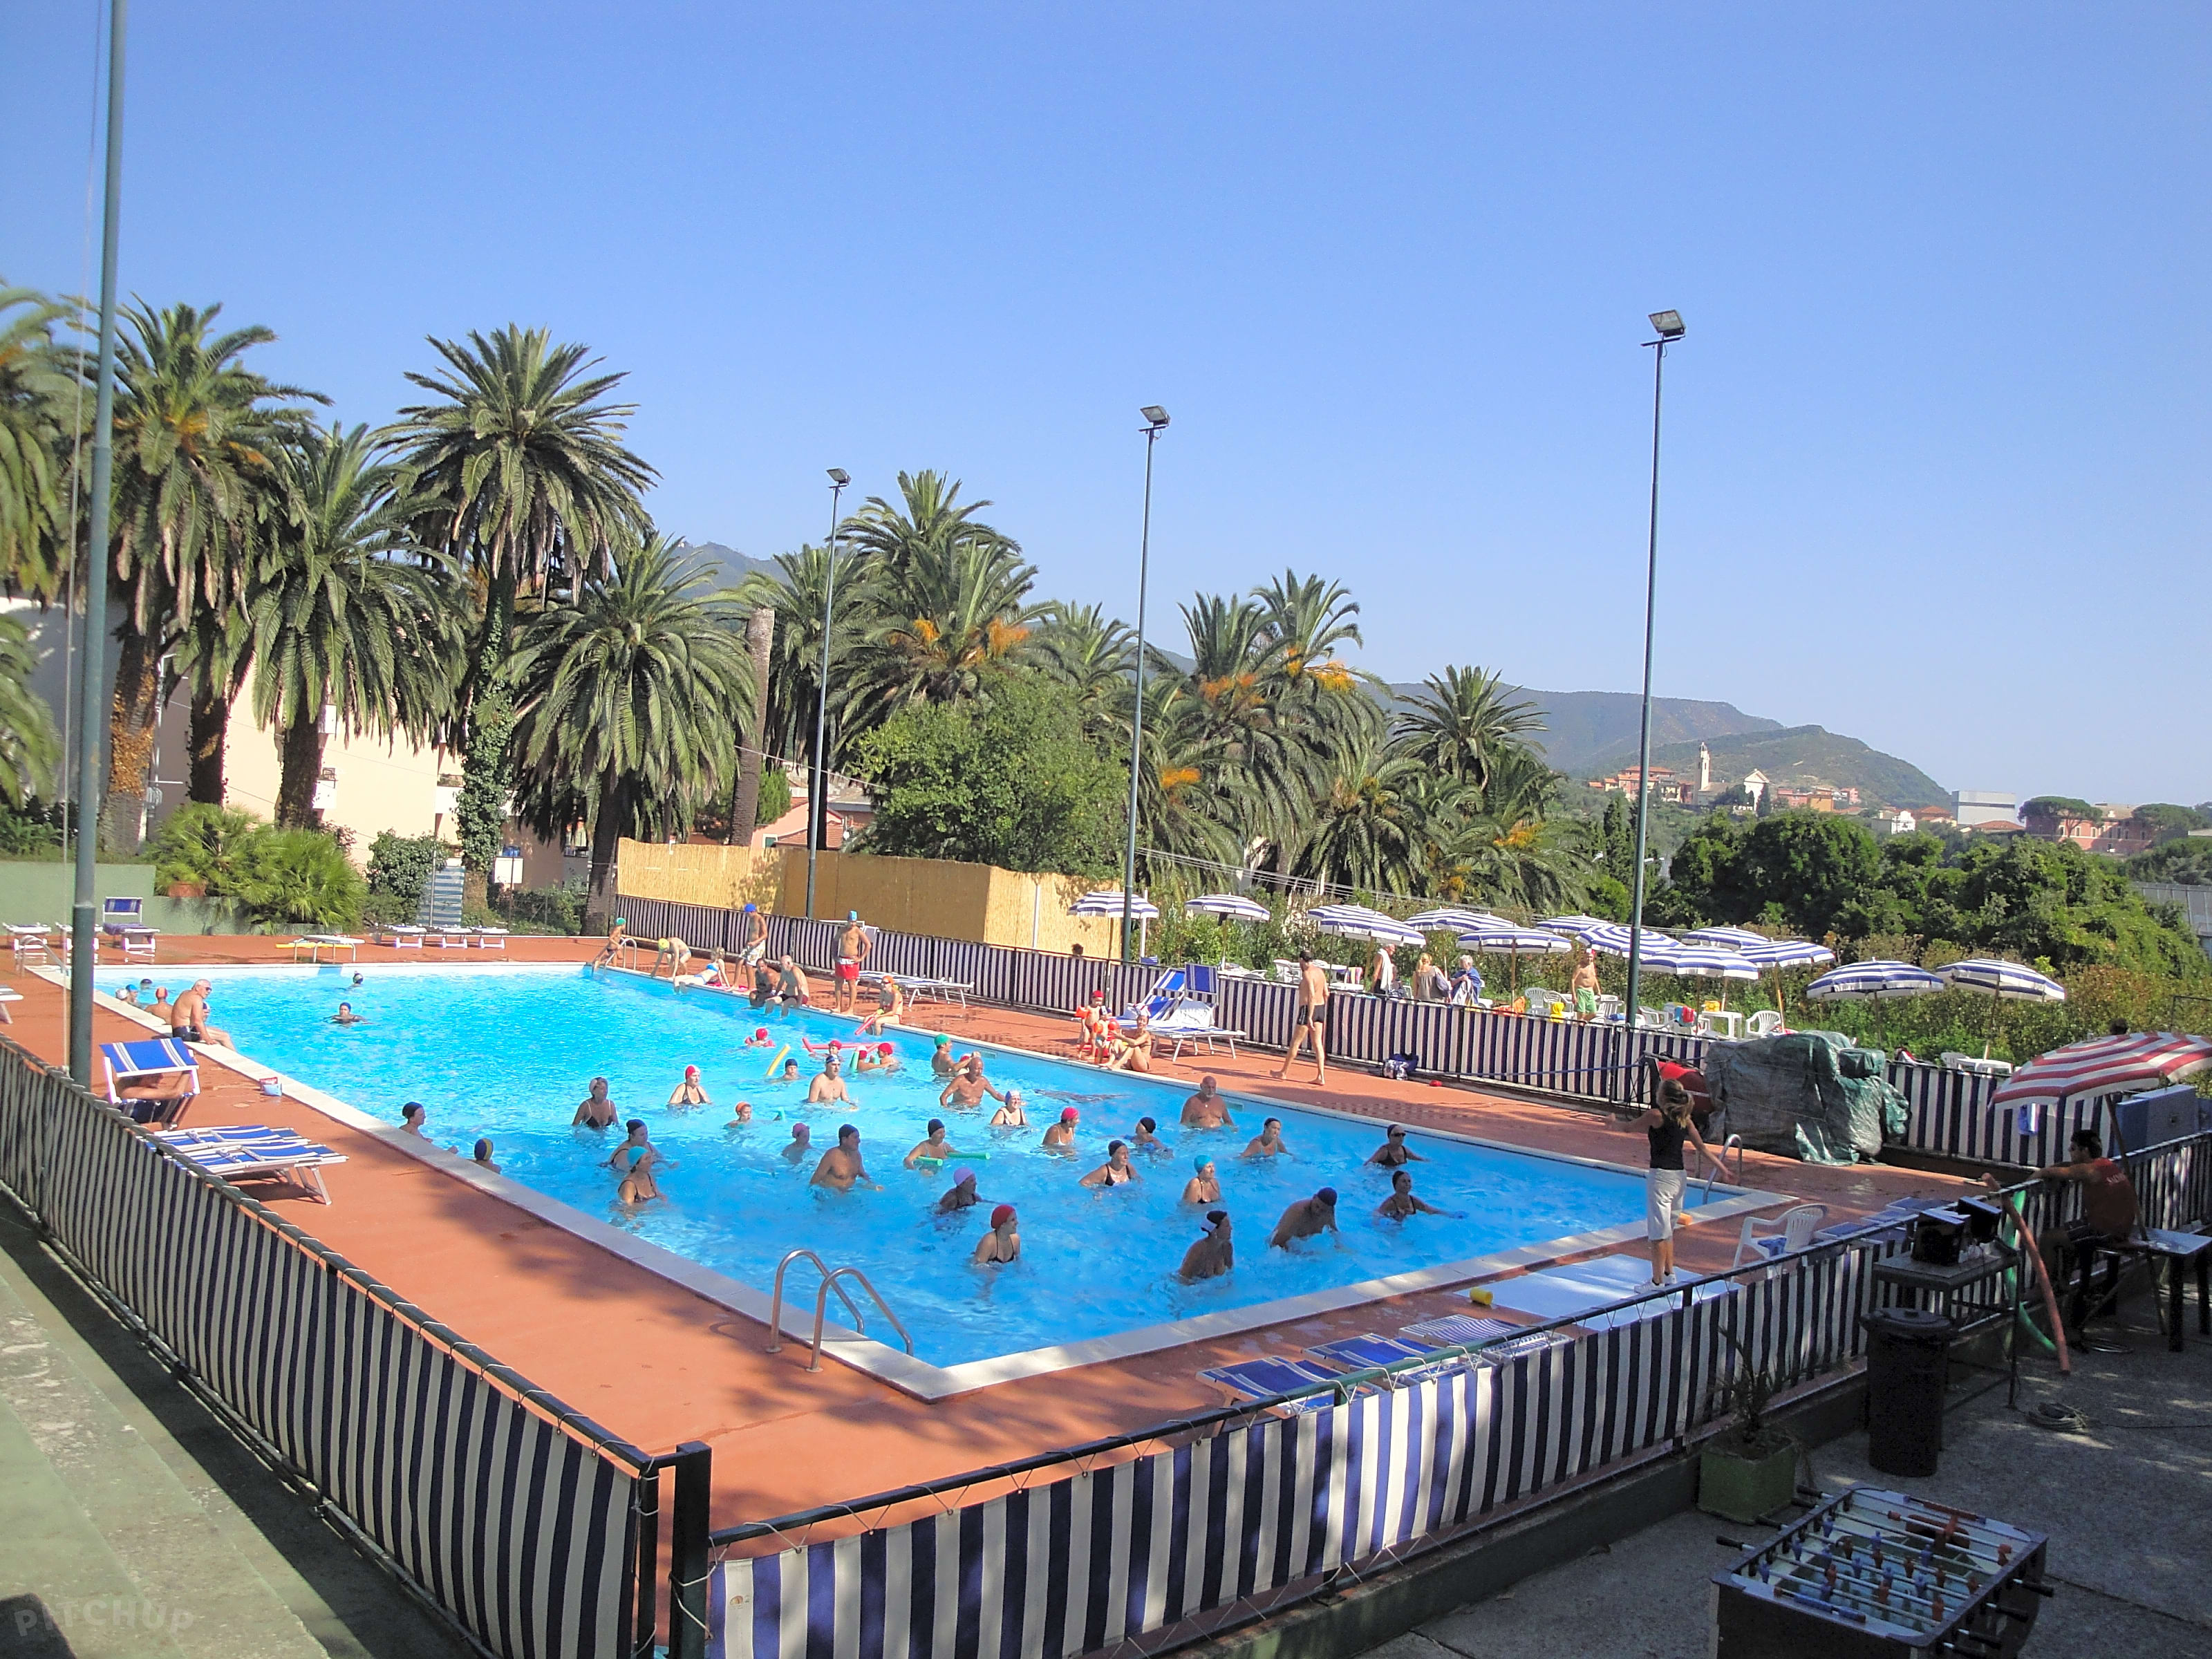 Tigullio Camping and Resort, Sestri Levante - Updated 2020 prices ...